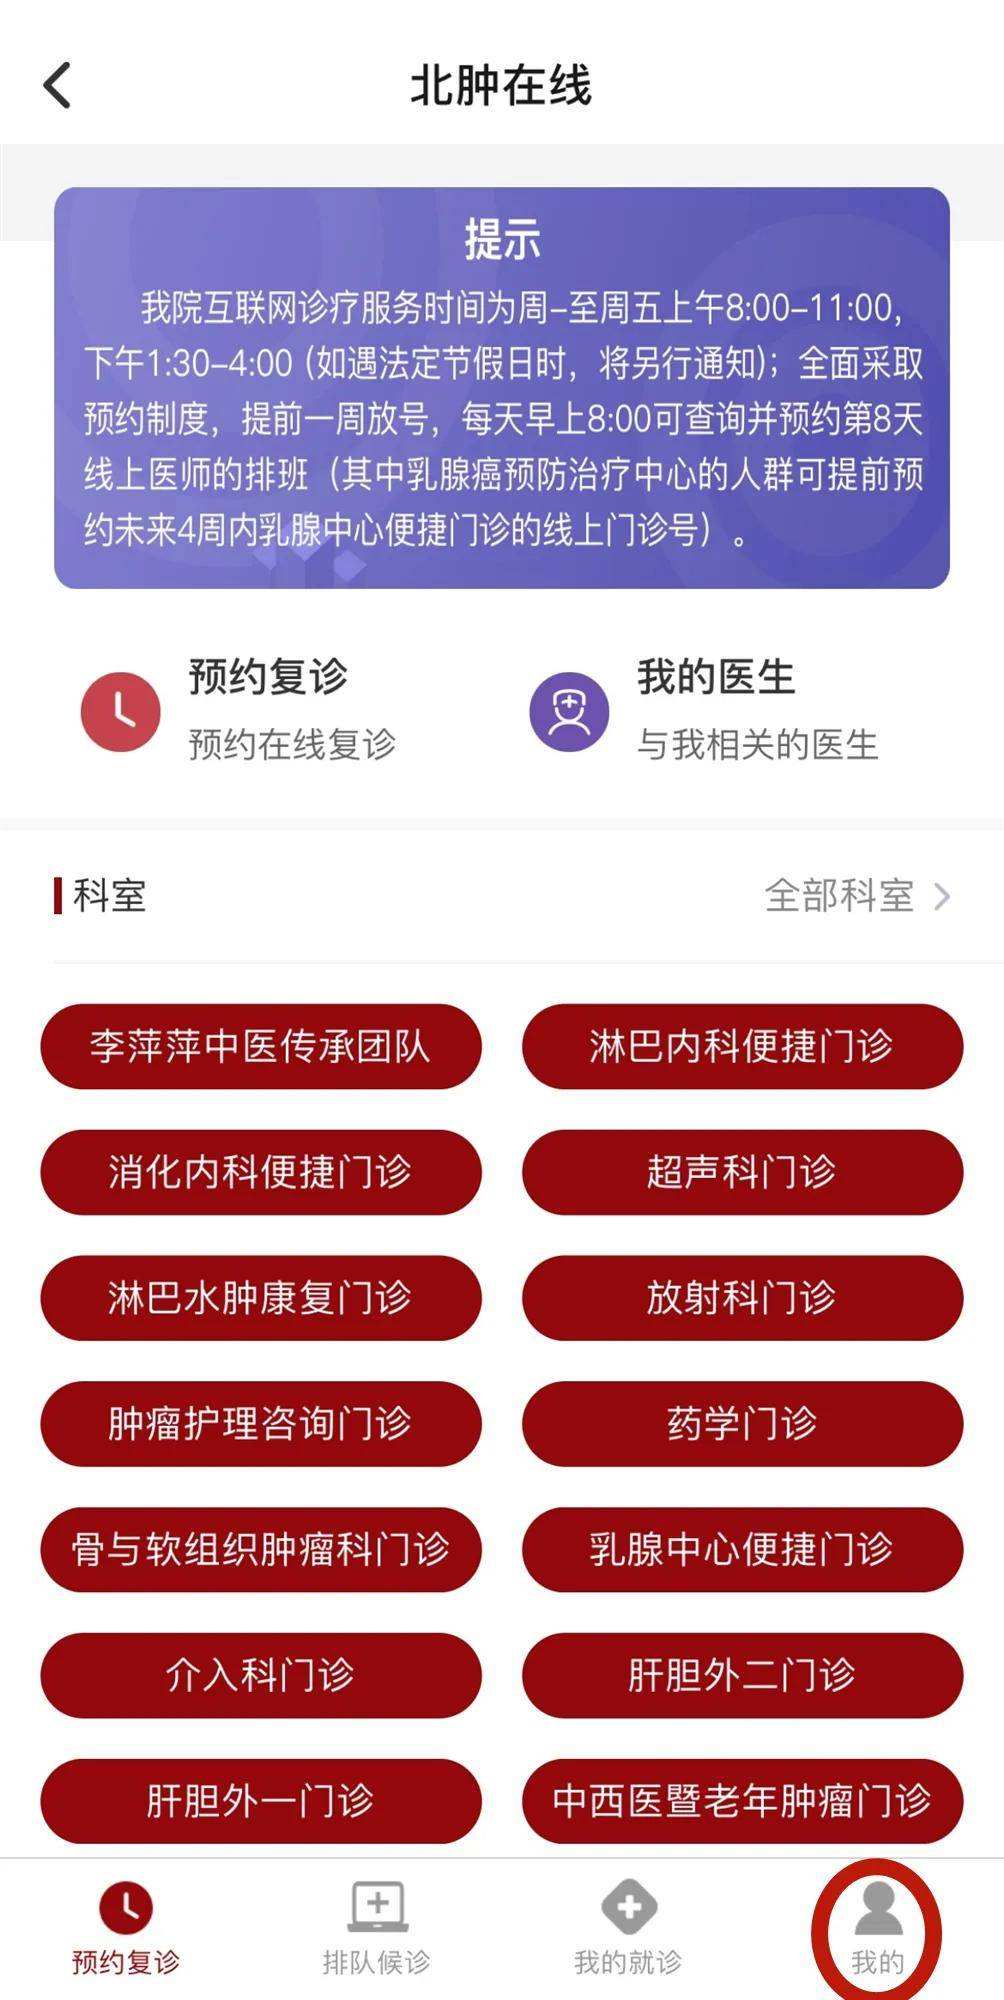 包含北京肿瘤医院代挂跑腿网上预约挂号，24小时接听您的电话的词条